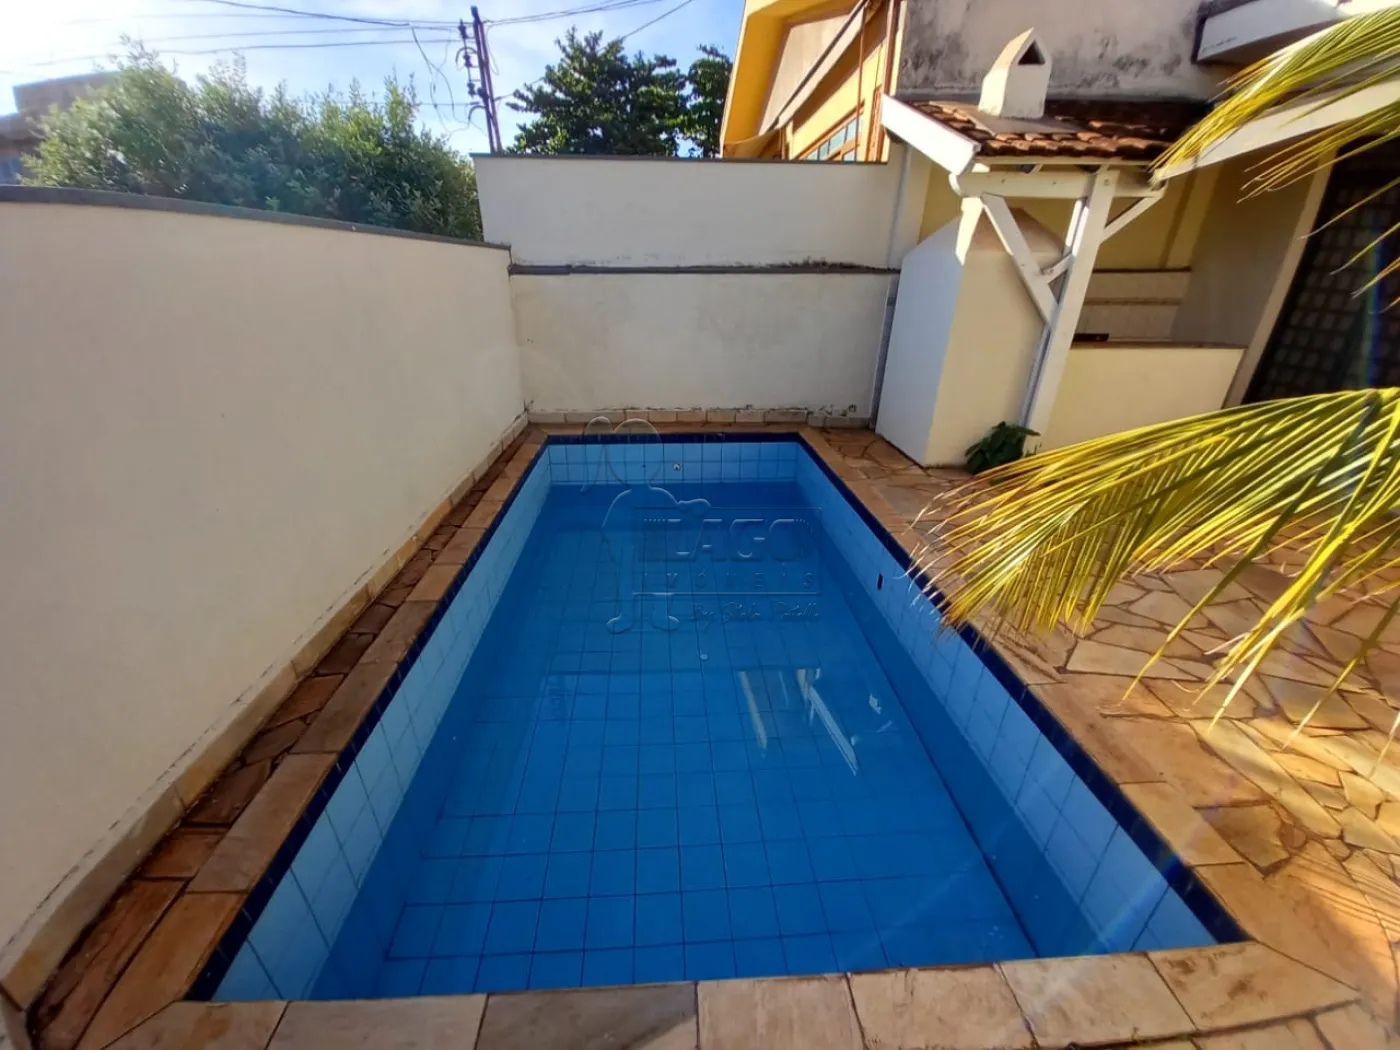 Comprar Casa / Padrão em Ribeirão Preto R$ 650.000,00 - Foto 3